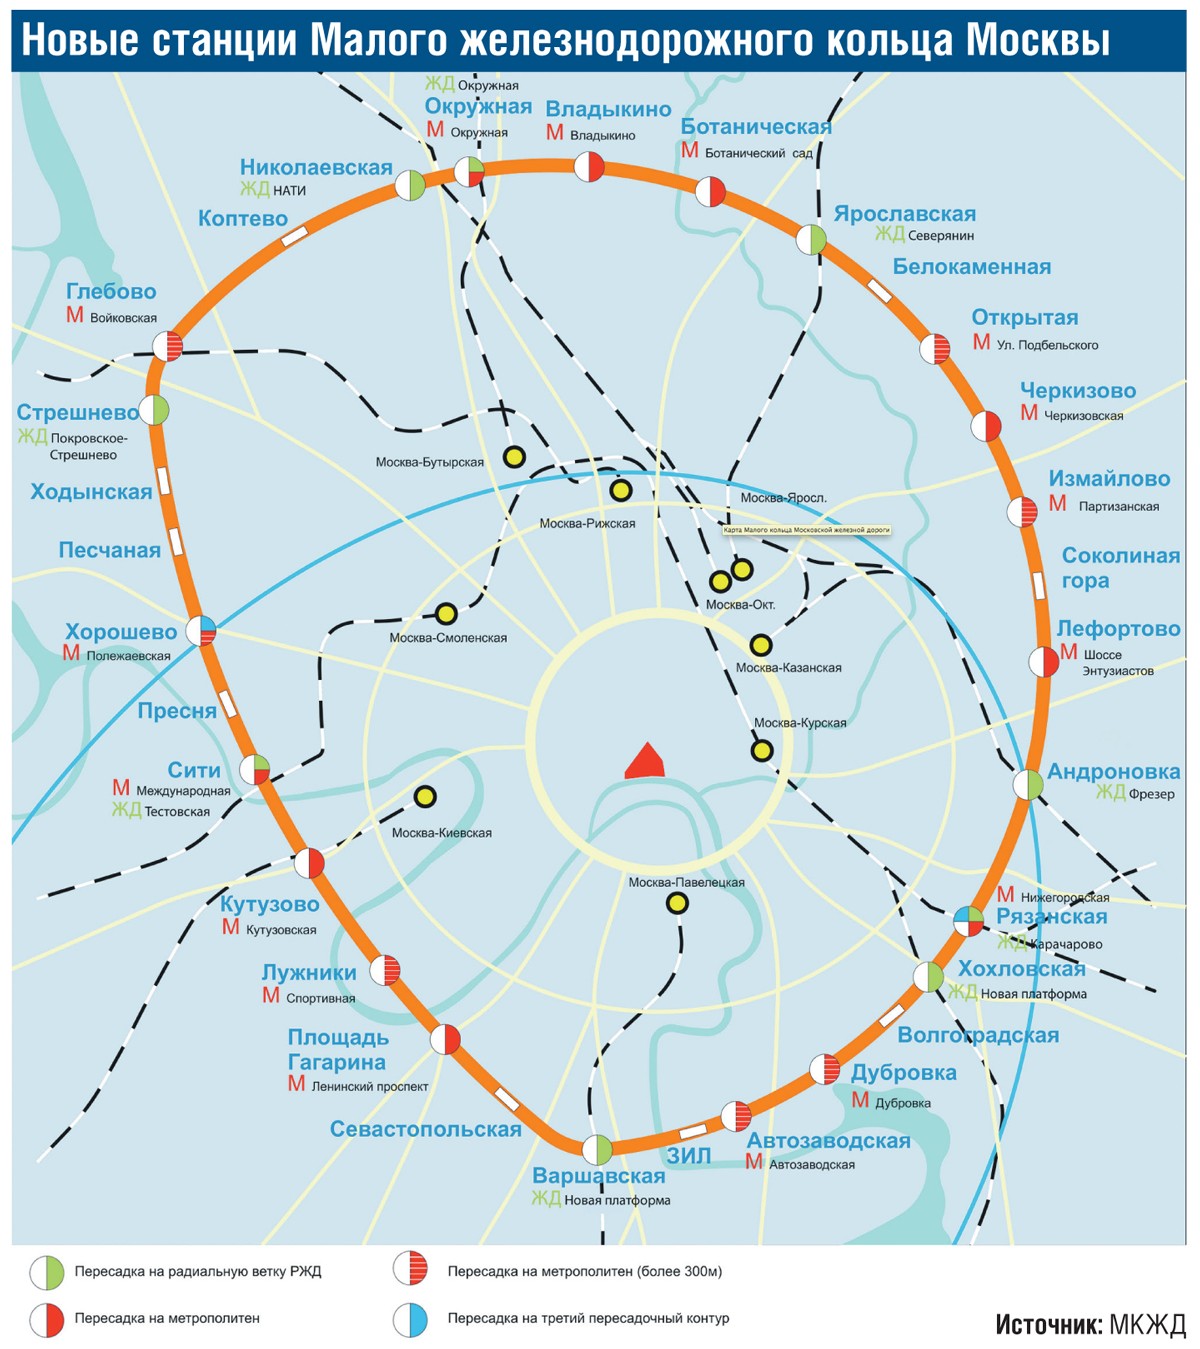 Схема Московской кольцевой железной дороги